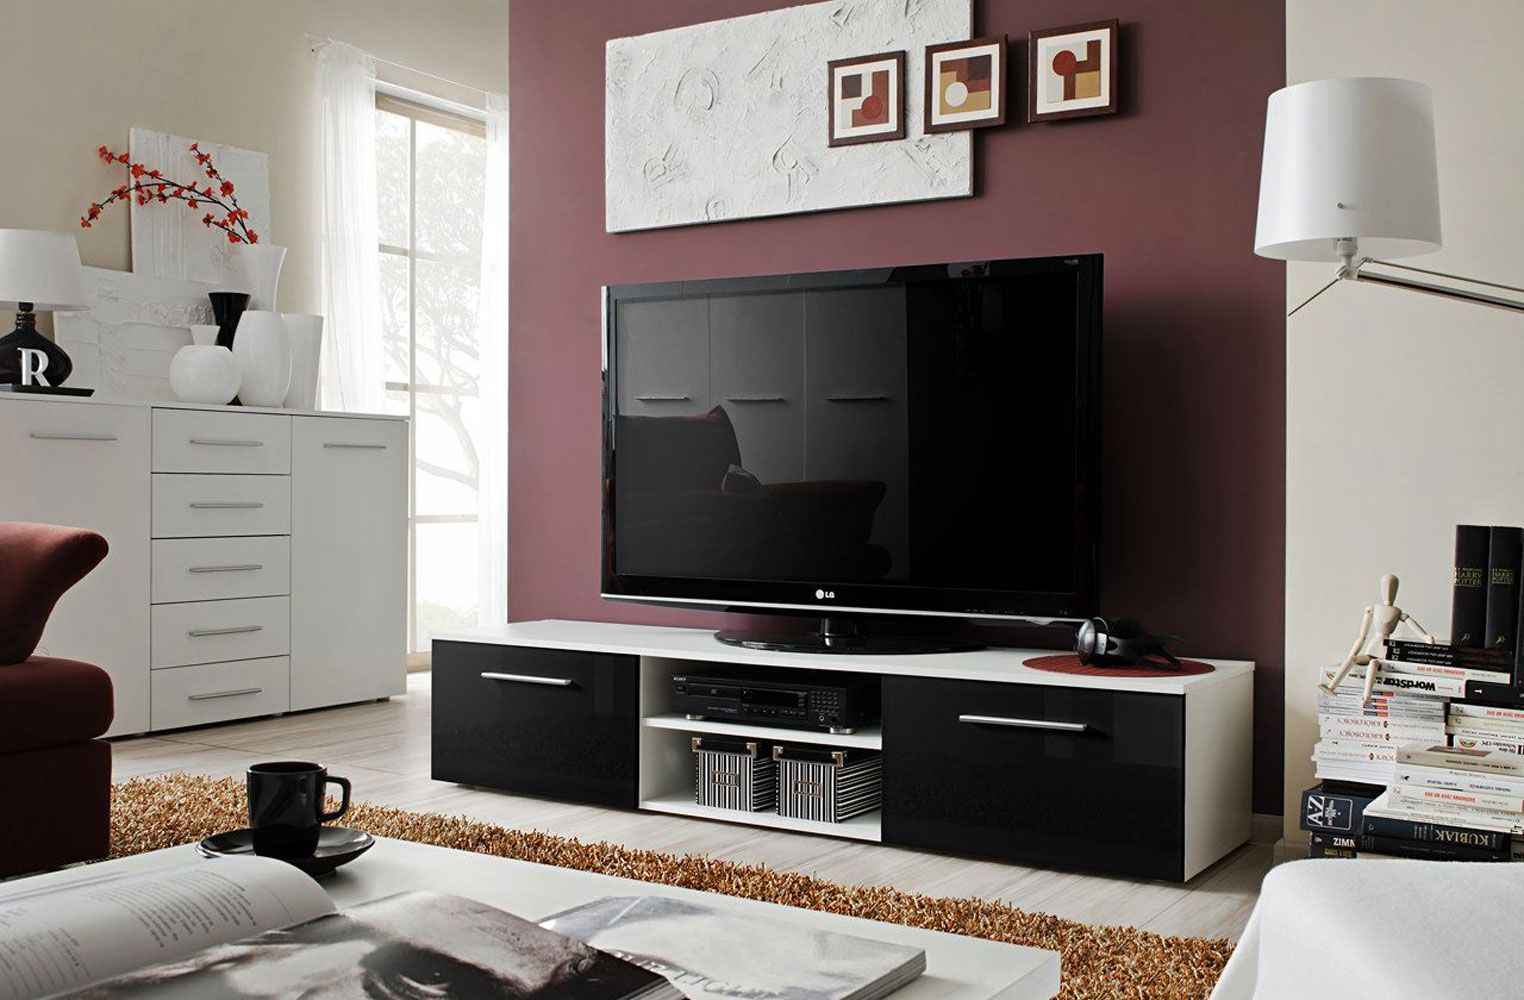 Salmeli 23 TV-meubel, kleur: wit / zwart - Afmetingen: 35 x 180 x 45 cm (H x B x D), met vier vakken